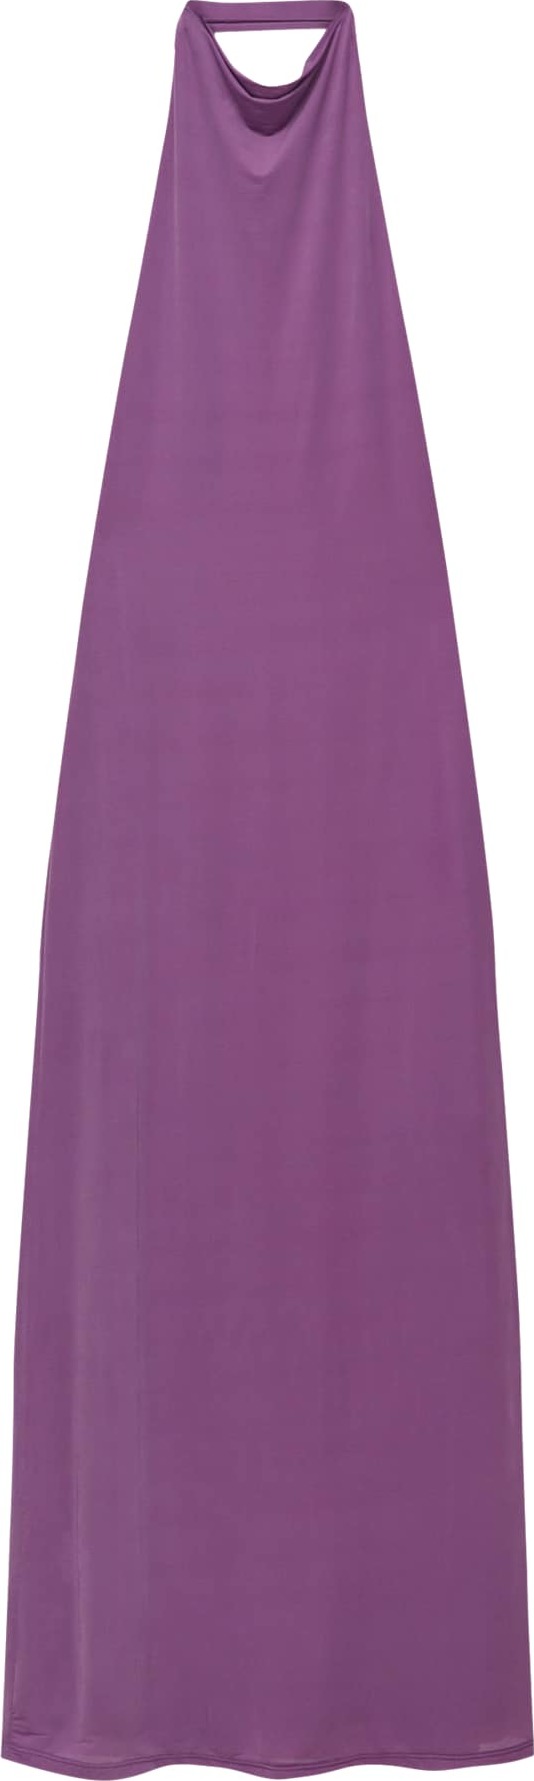 Pull&Bear Společenské šaty fialová / fialkově modrá